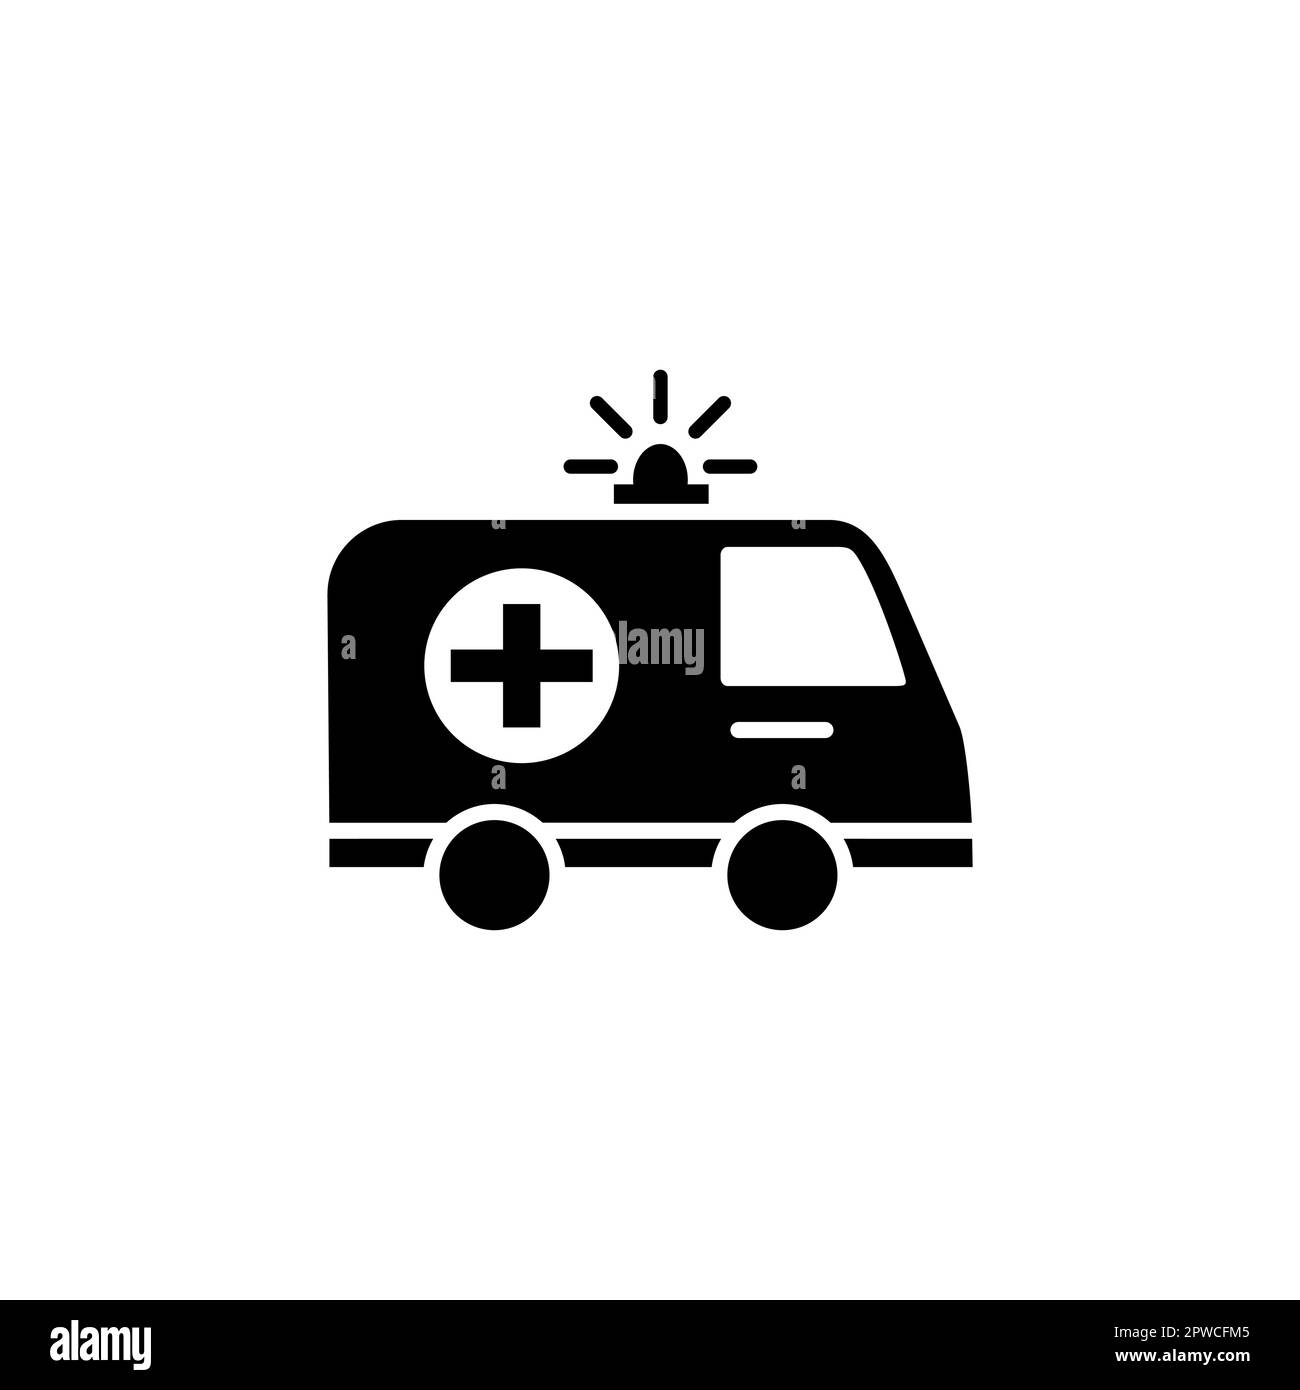 Krankenwagen in Vektor dargestellt